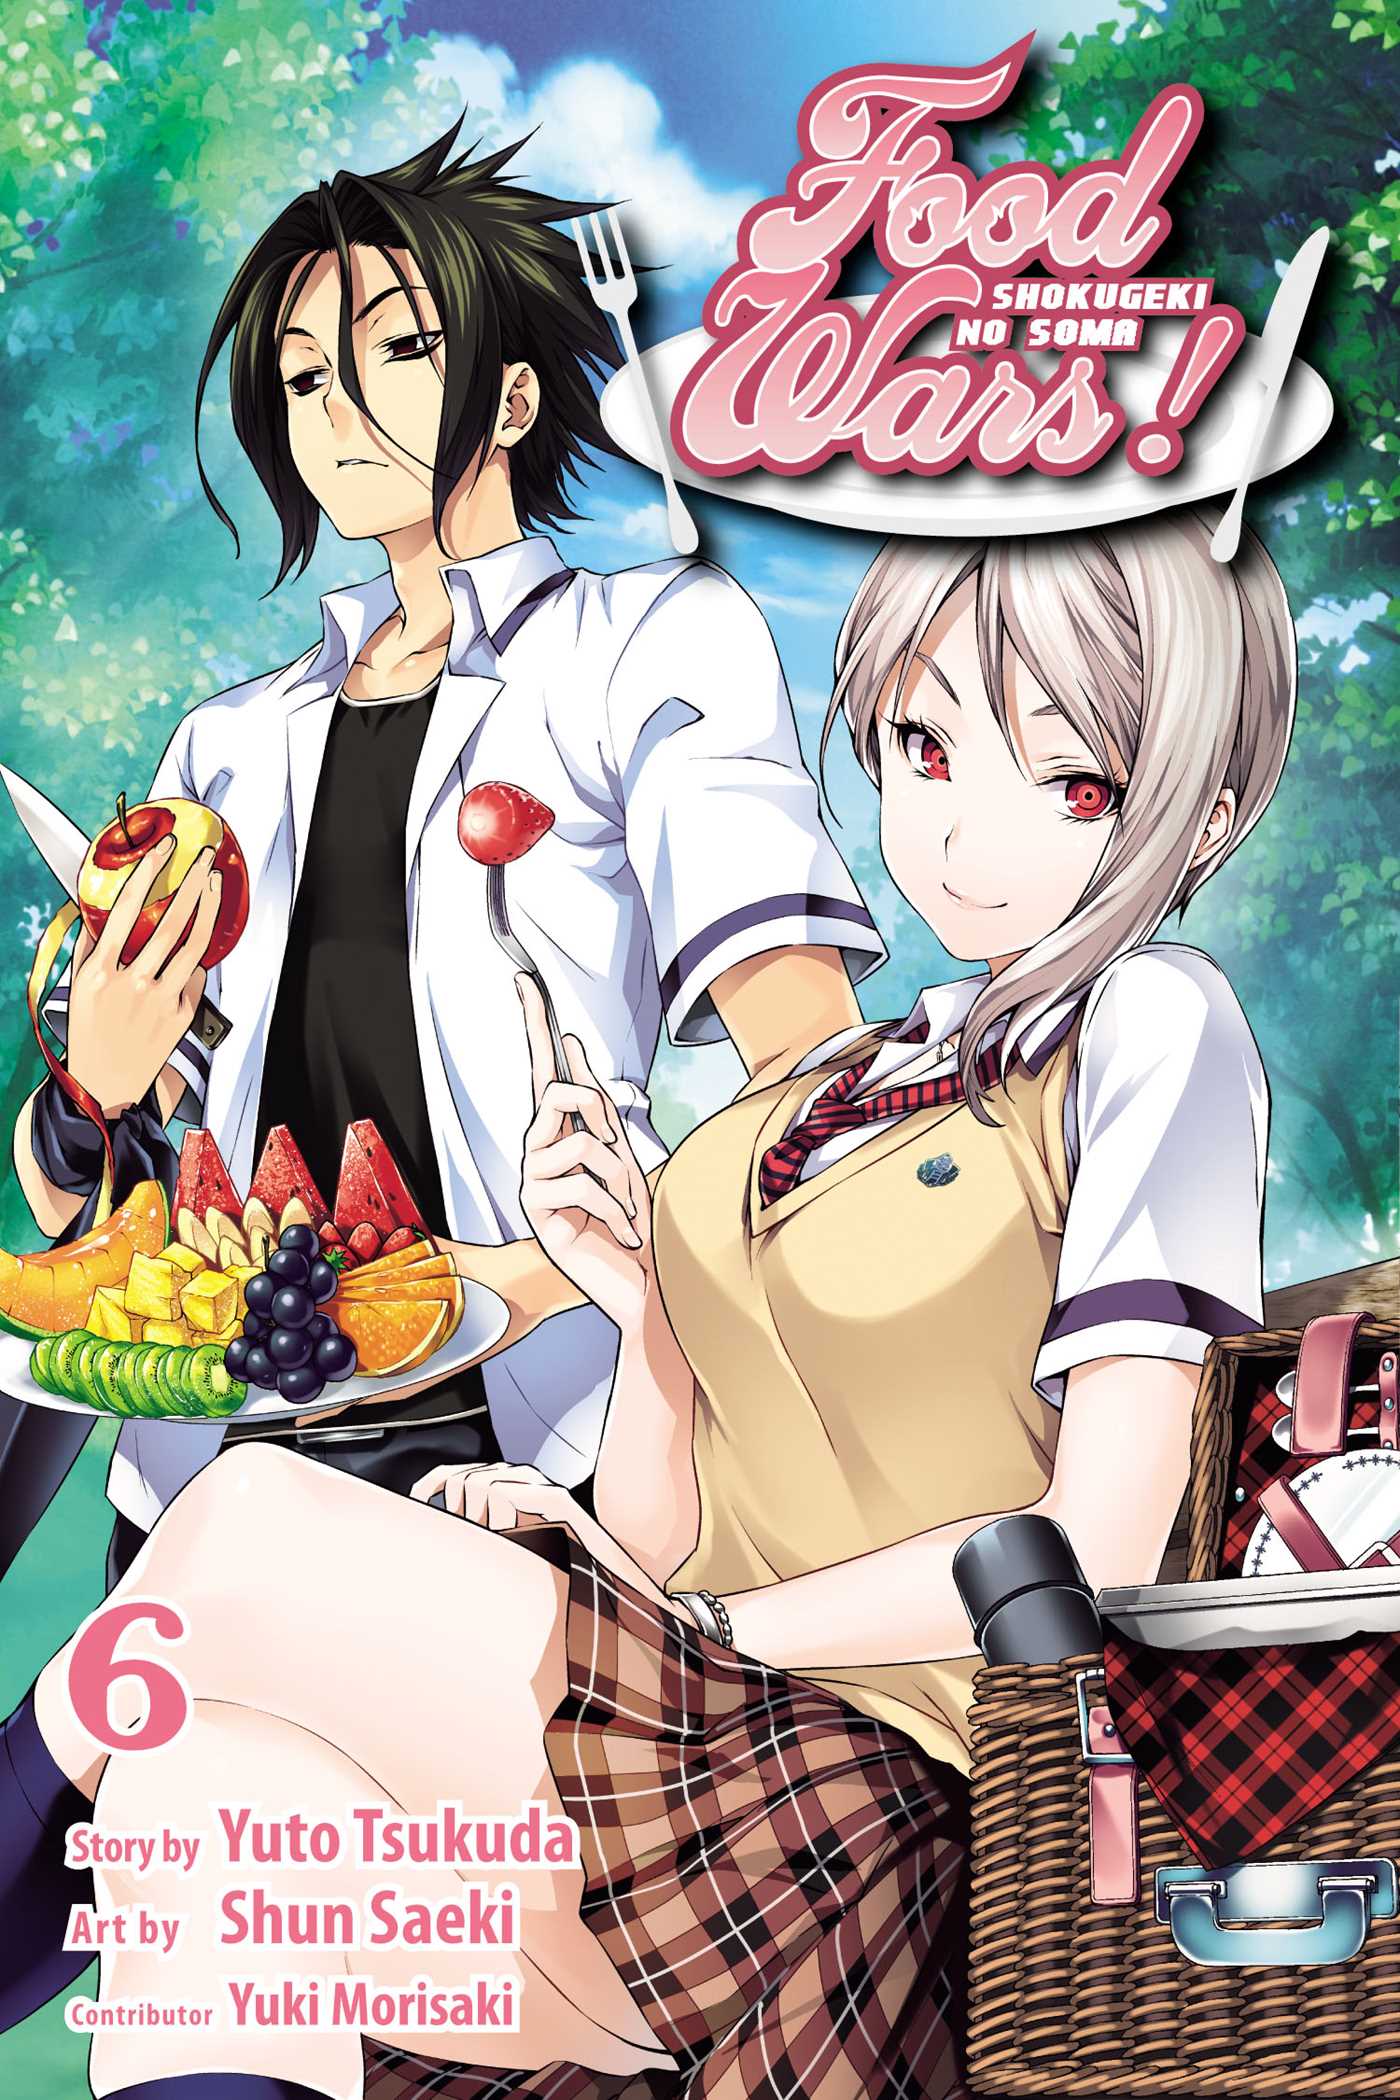 Food Wars!: Shokugeki no Soma Vol. 6 | Tsukuda, Yuto (Auteur) | Saeki, Shun (Illustrateur)